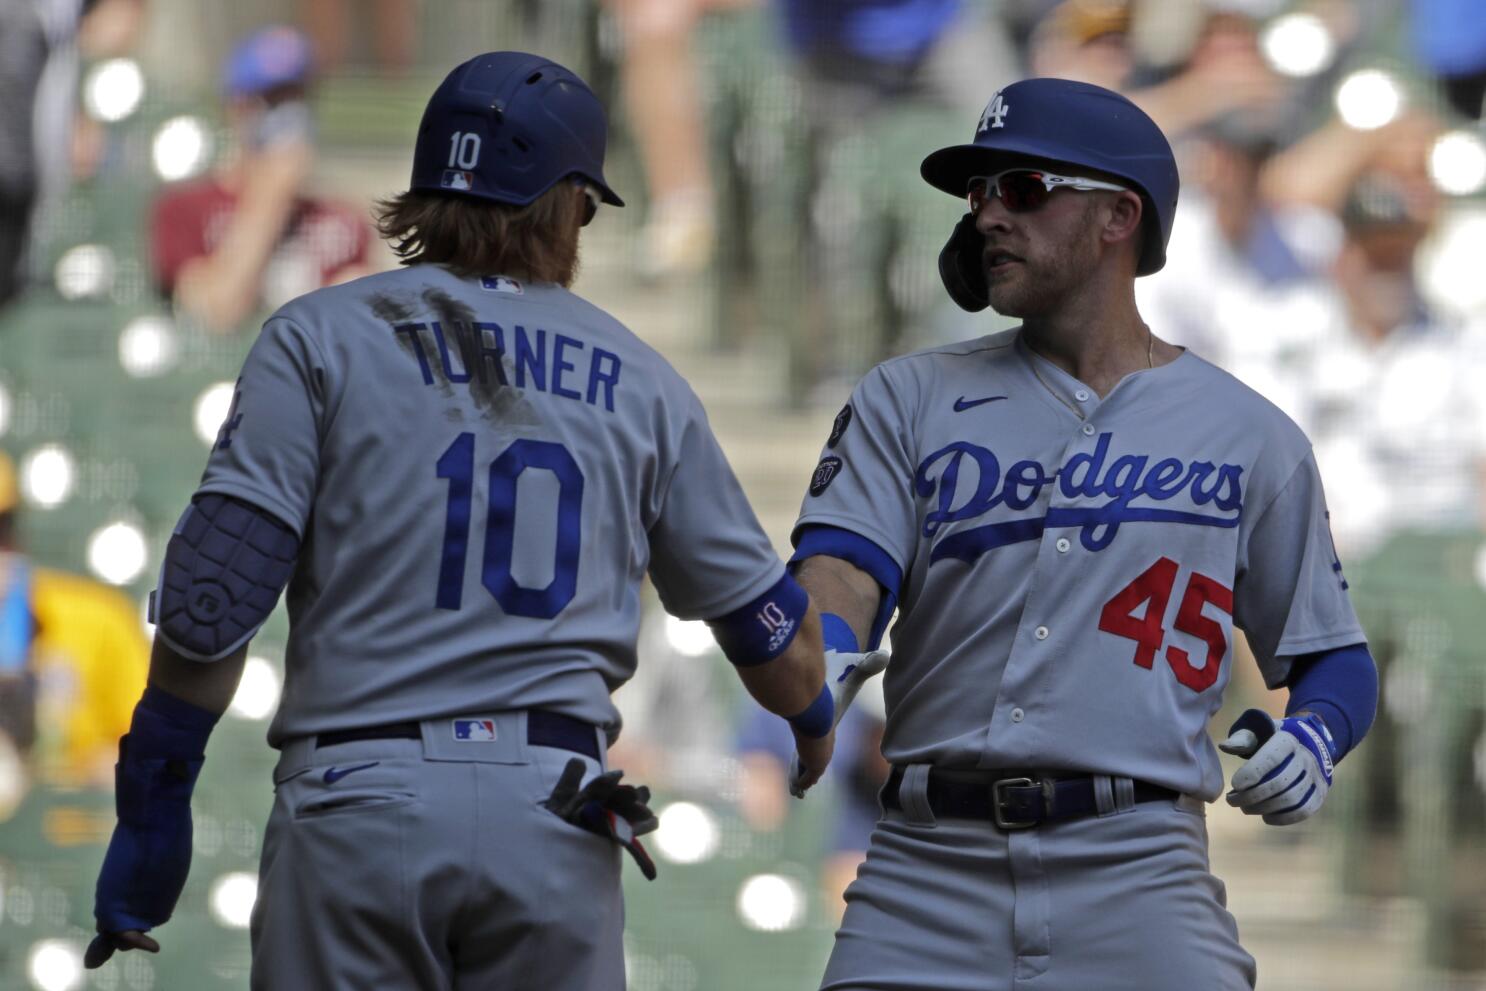 Dodgers duo Betts, Bellinger tops best-selling jerseys list